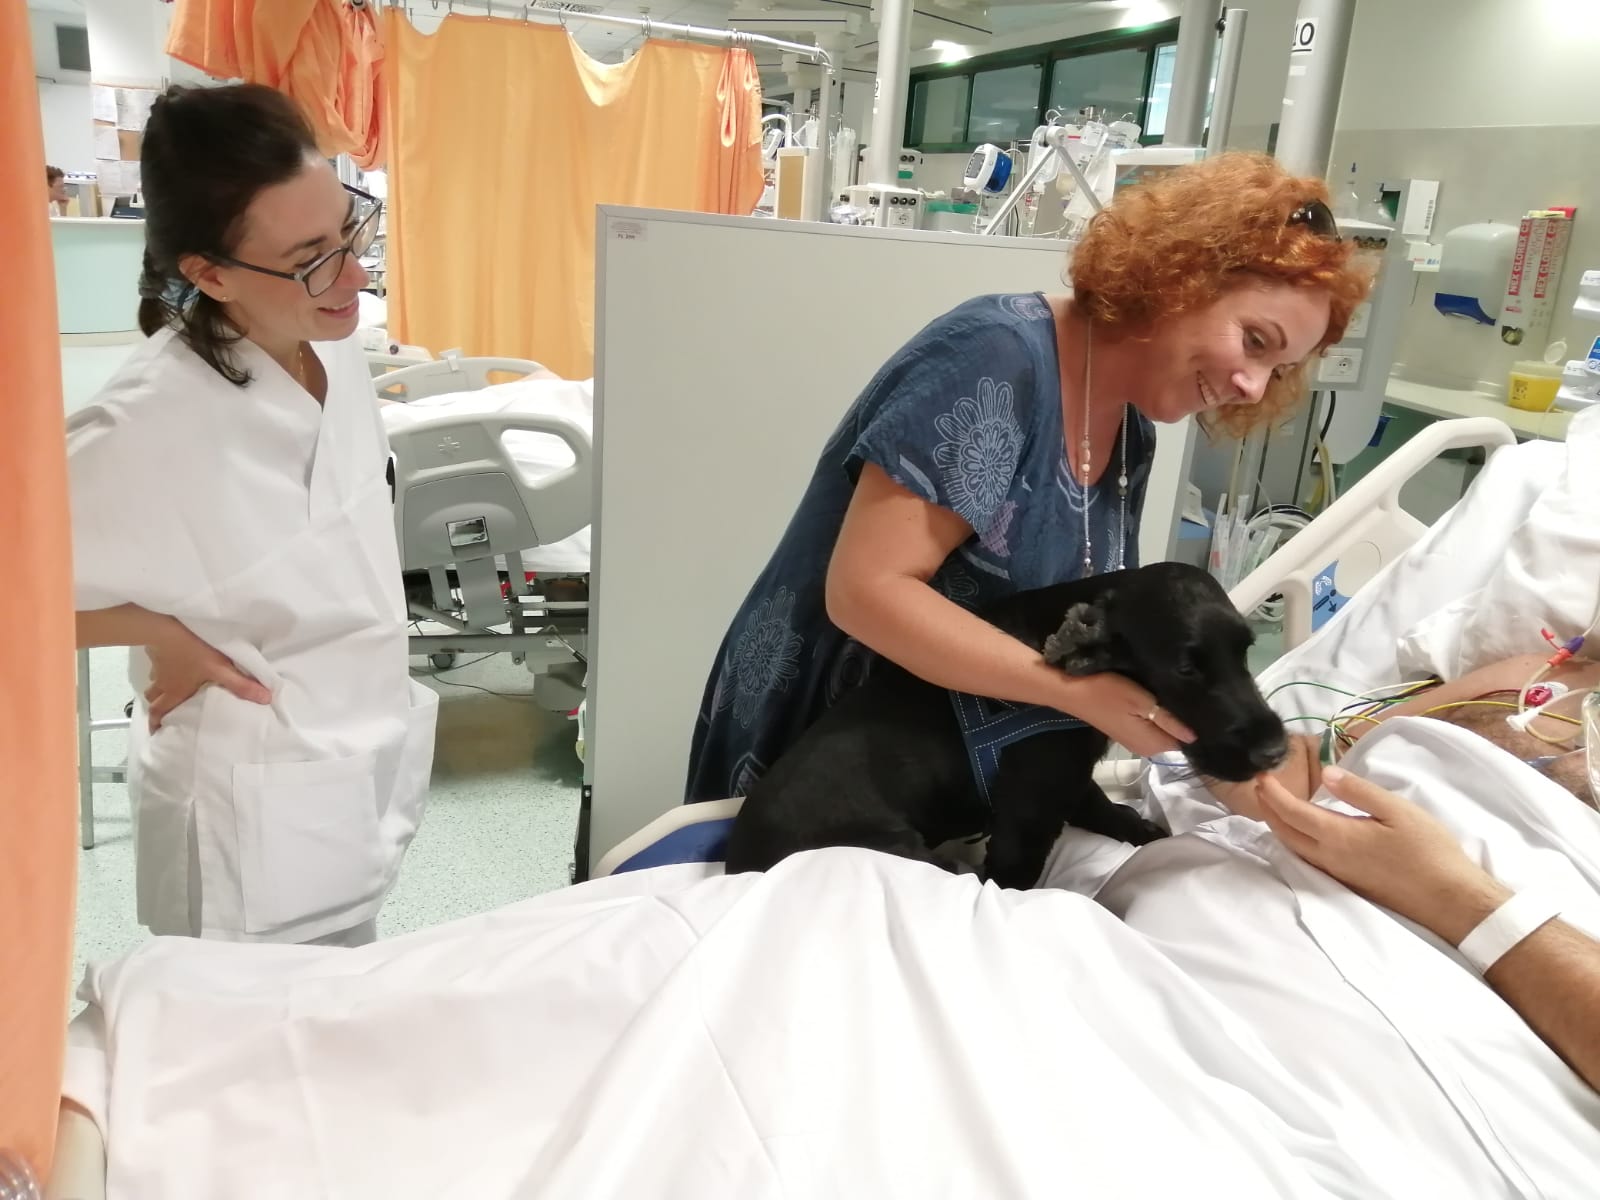 Cane nello in terapia intensiva con paziente